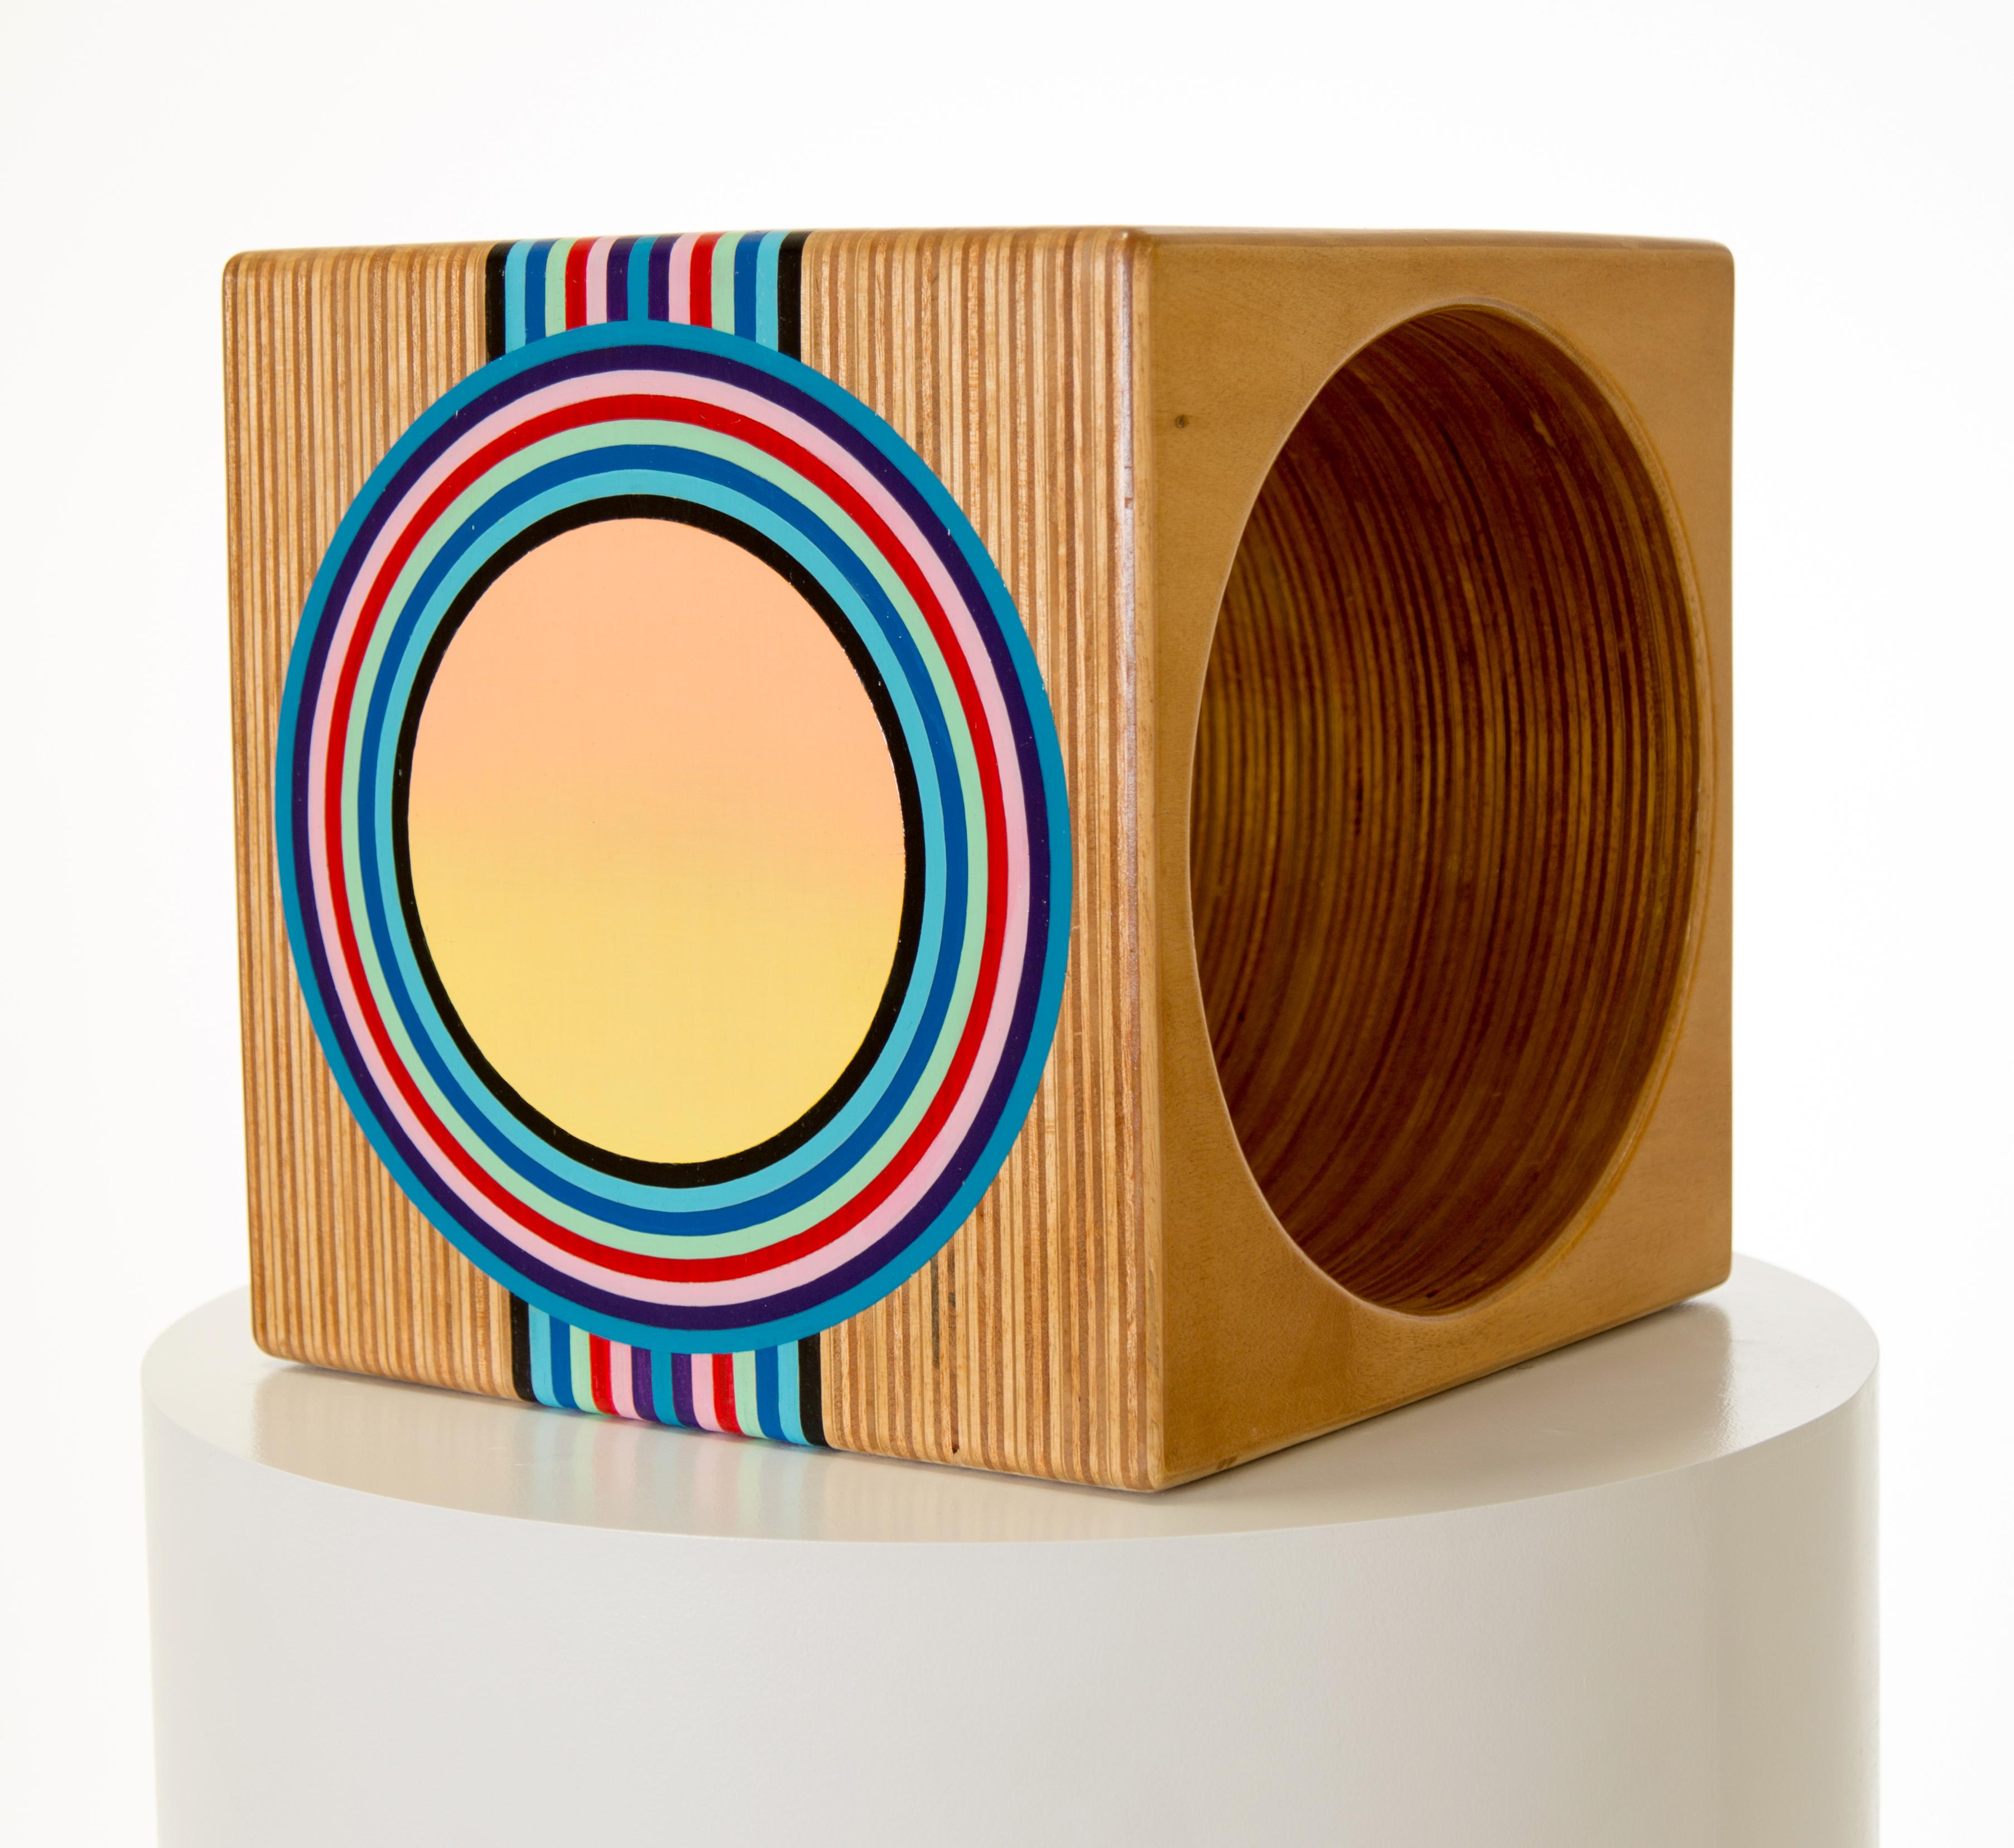 Cube en bois - Sculpture de Mark Knoerzer